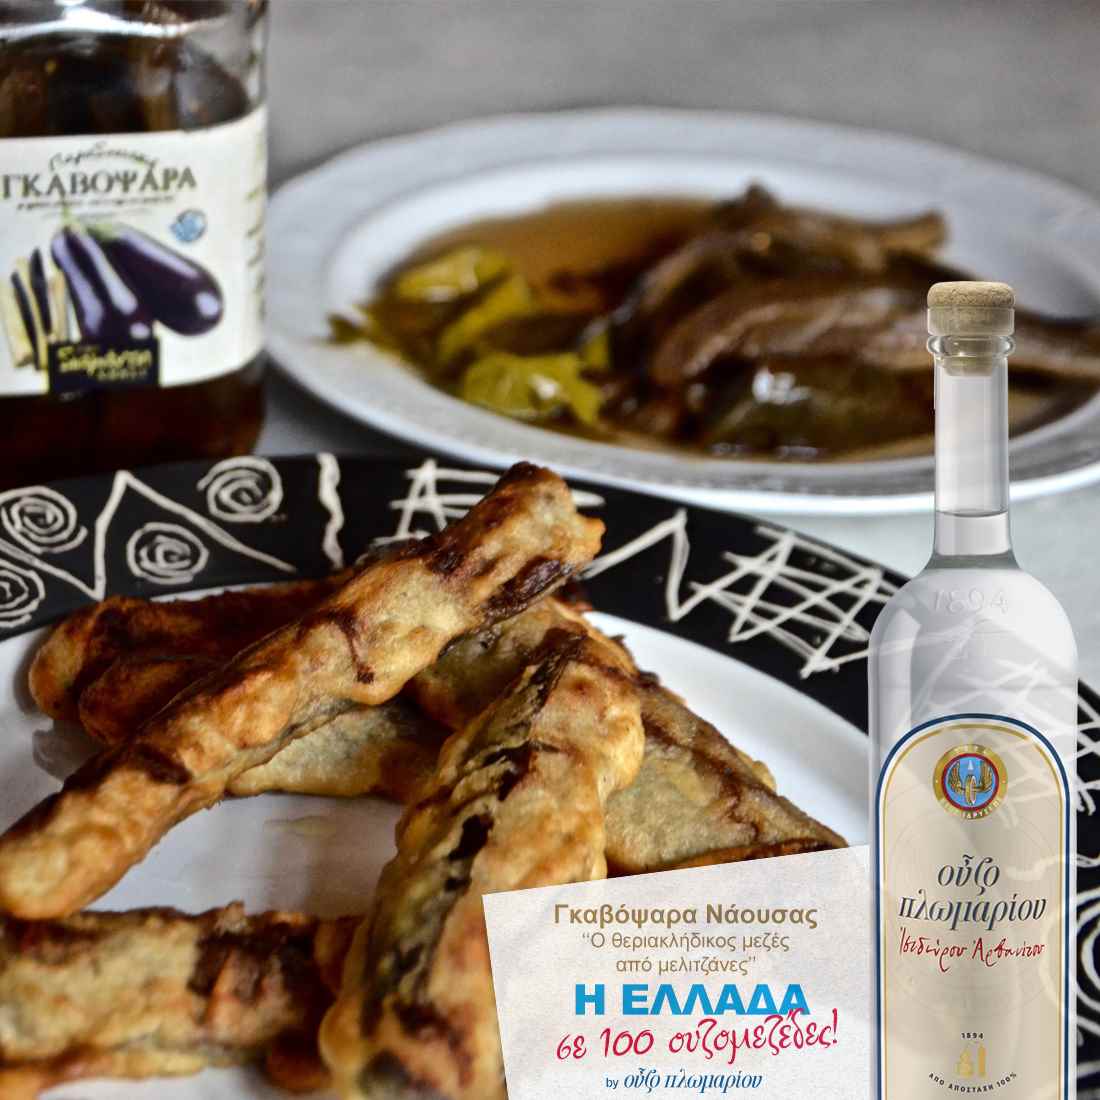 Γκαβόψαρα Νάουσας - Ουζομεζέδες - Greek Gastronomy Guide